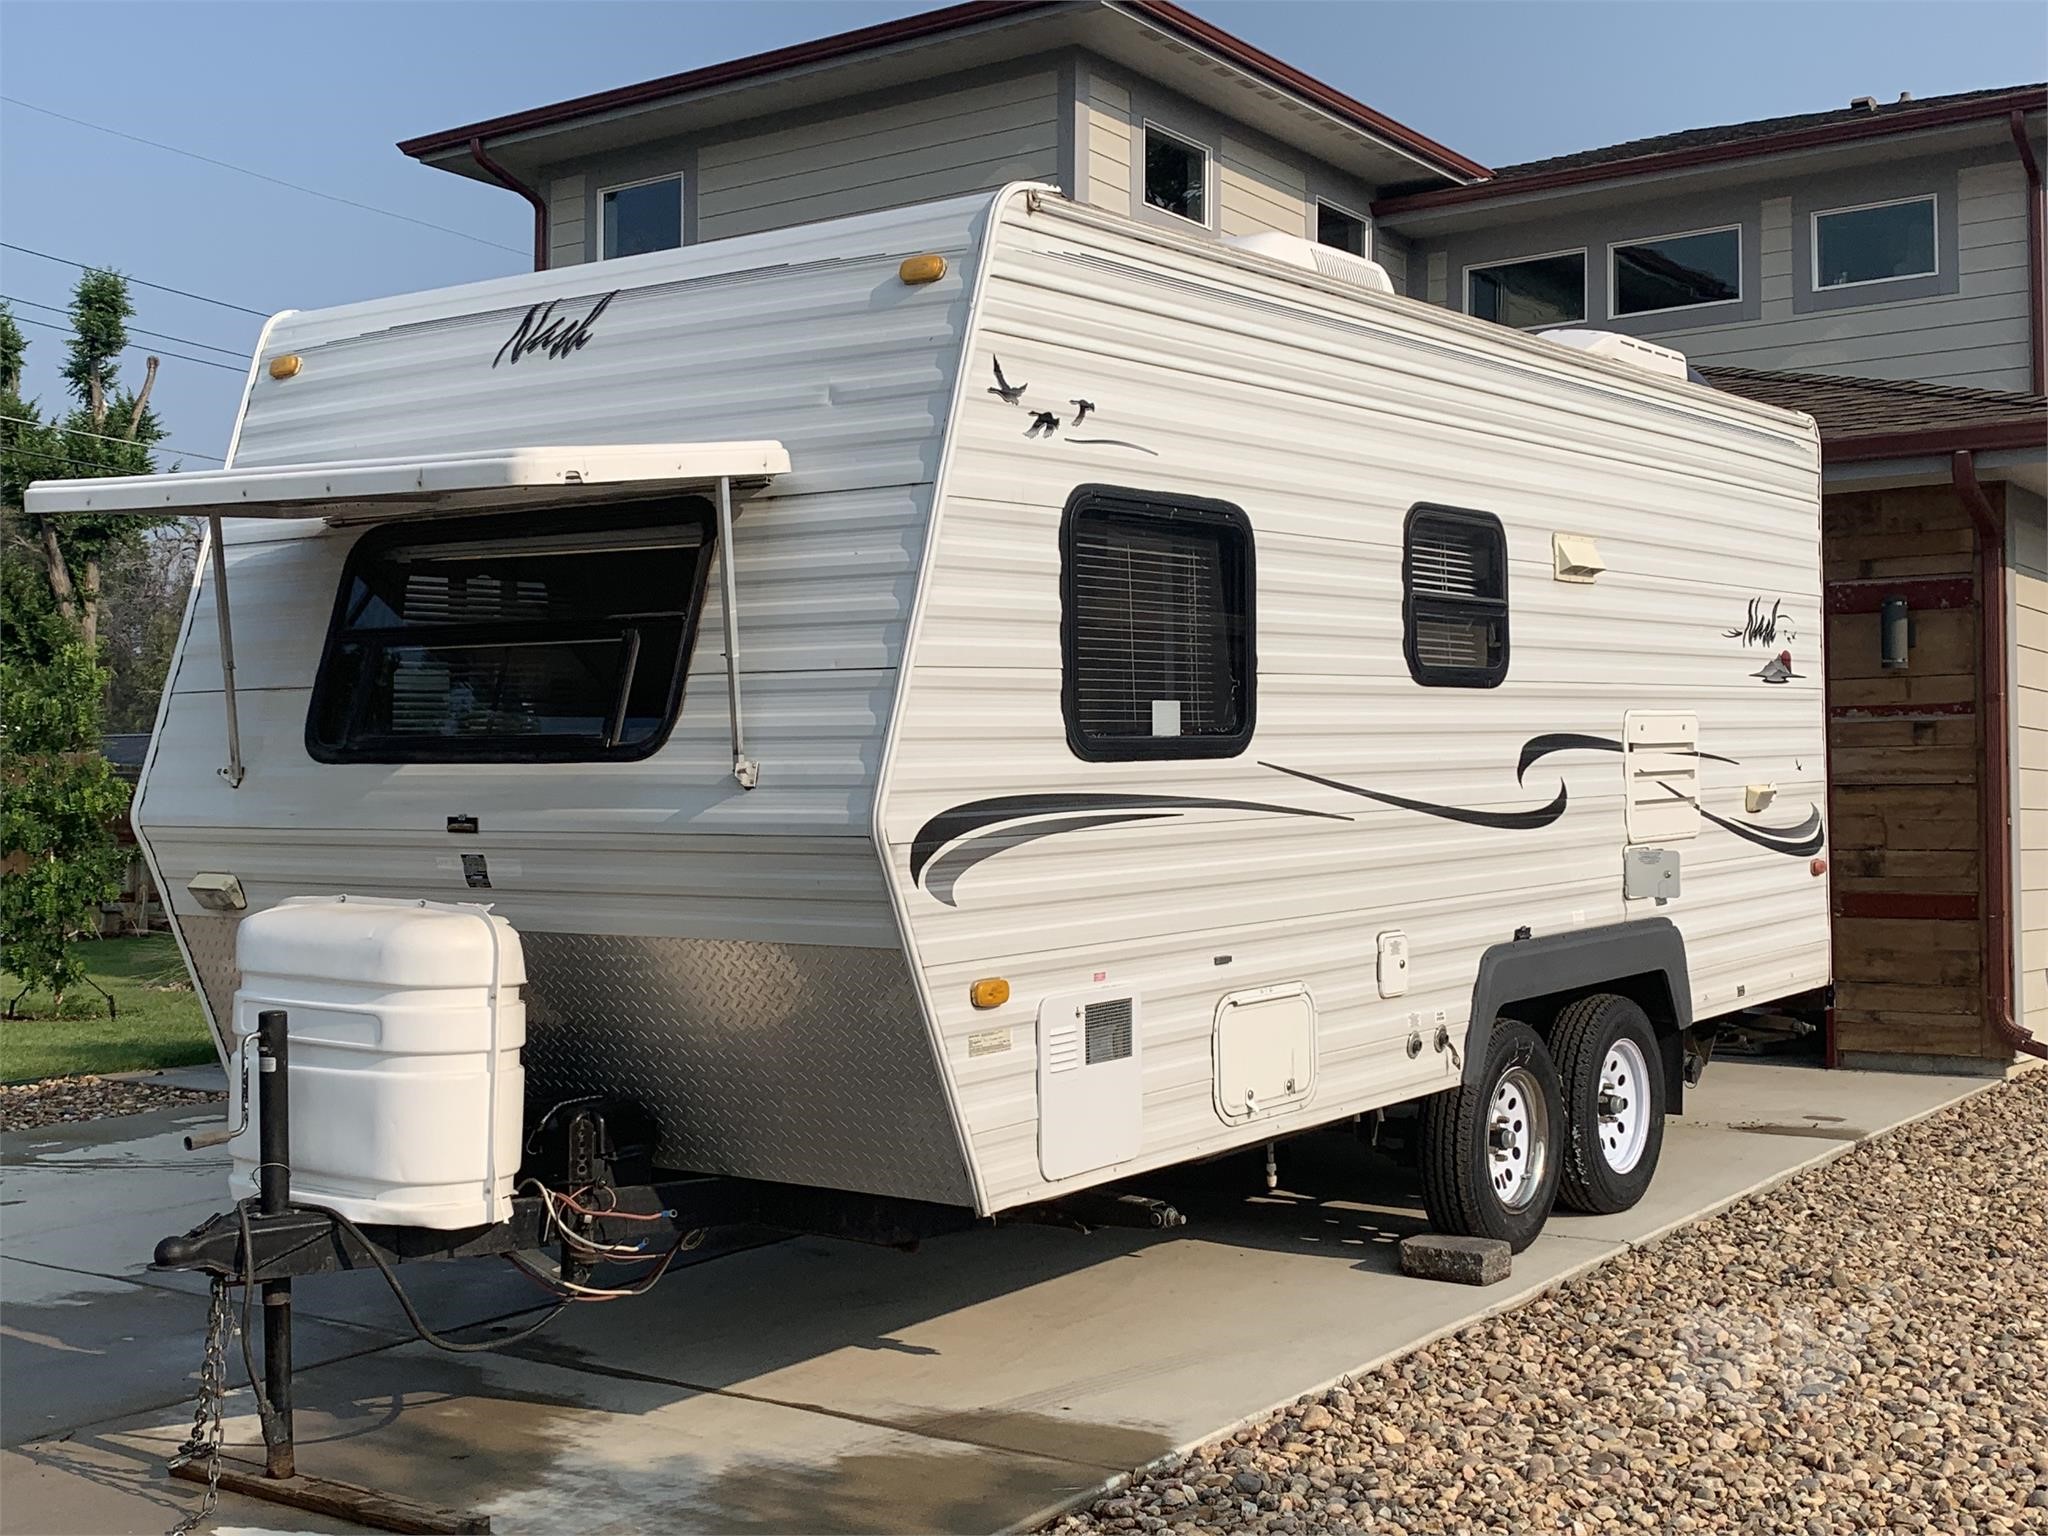 northwood nash travel trailer for sale